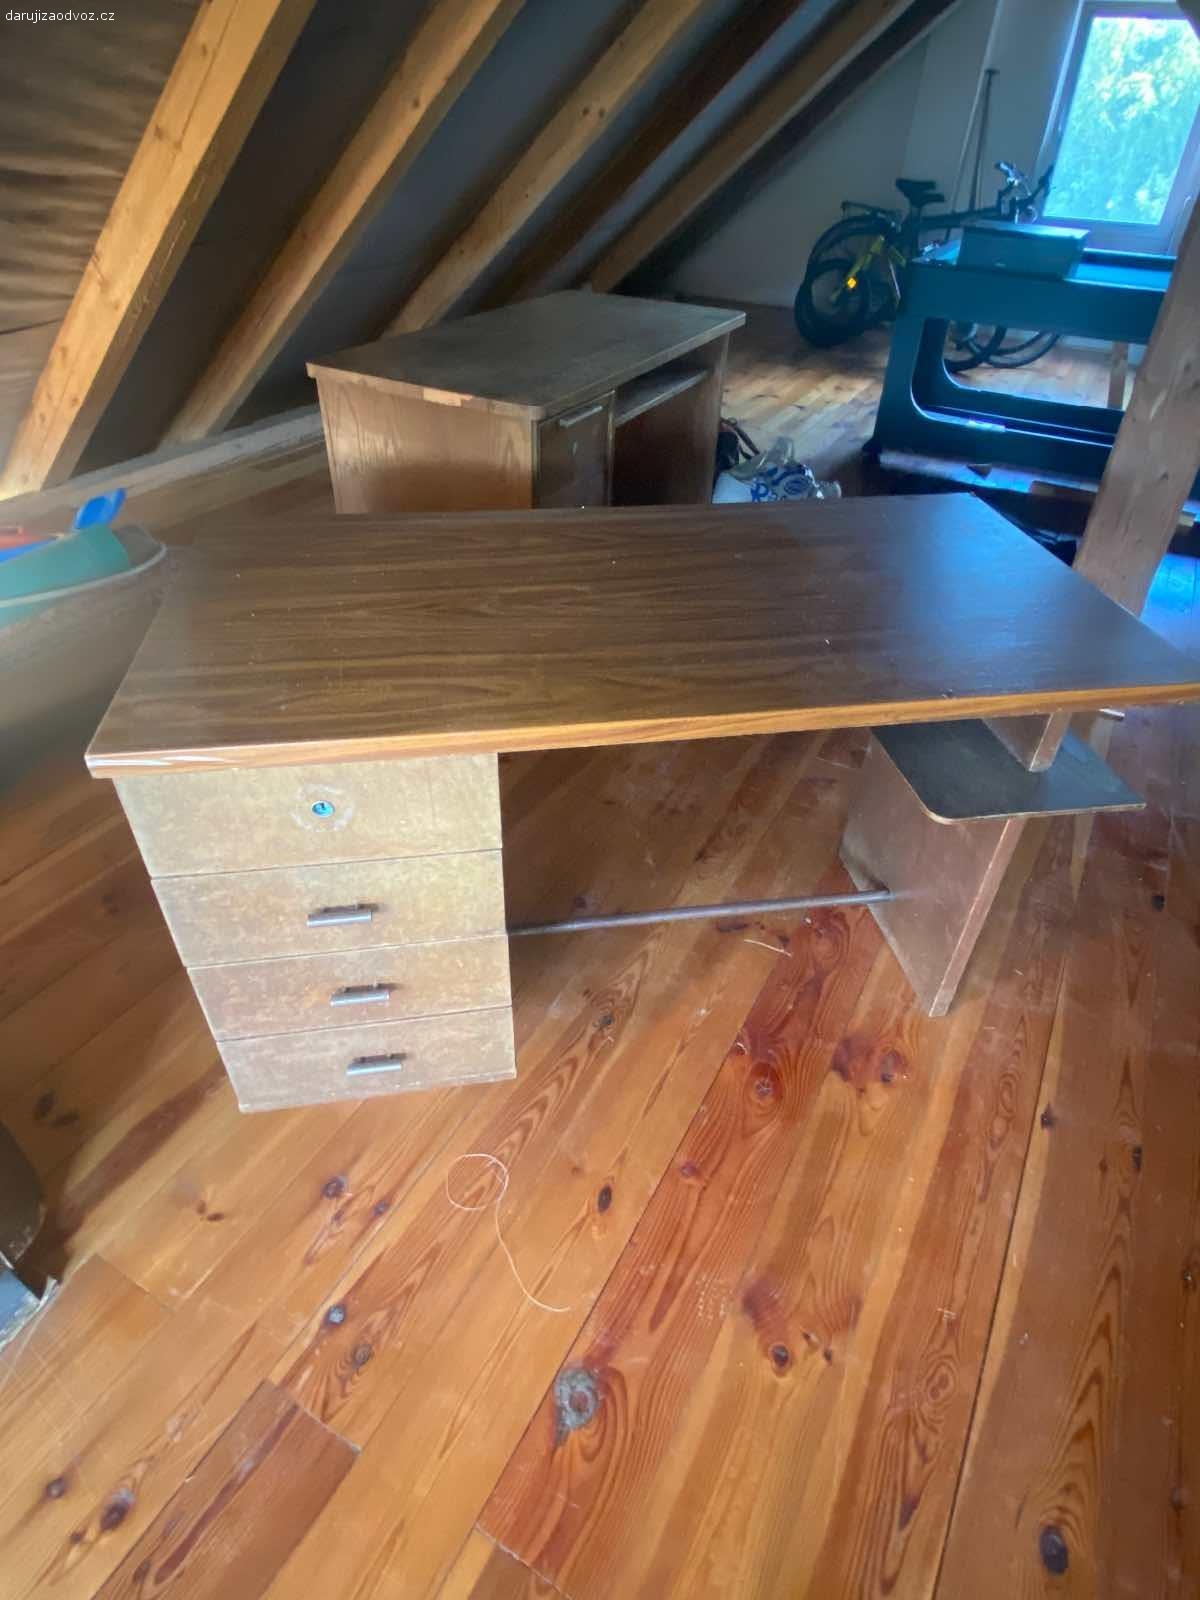 Dva psací stoly za odvoz. Daruji za odvoz dva zachovalé dřevěné psací stoly. Rozměry u obou stejné, viz foto.
Čím dřív, tím líp.